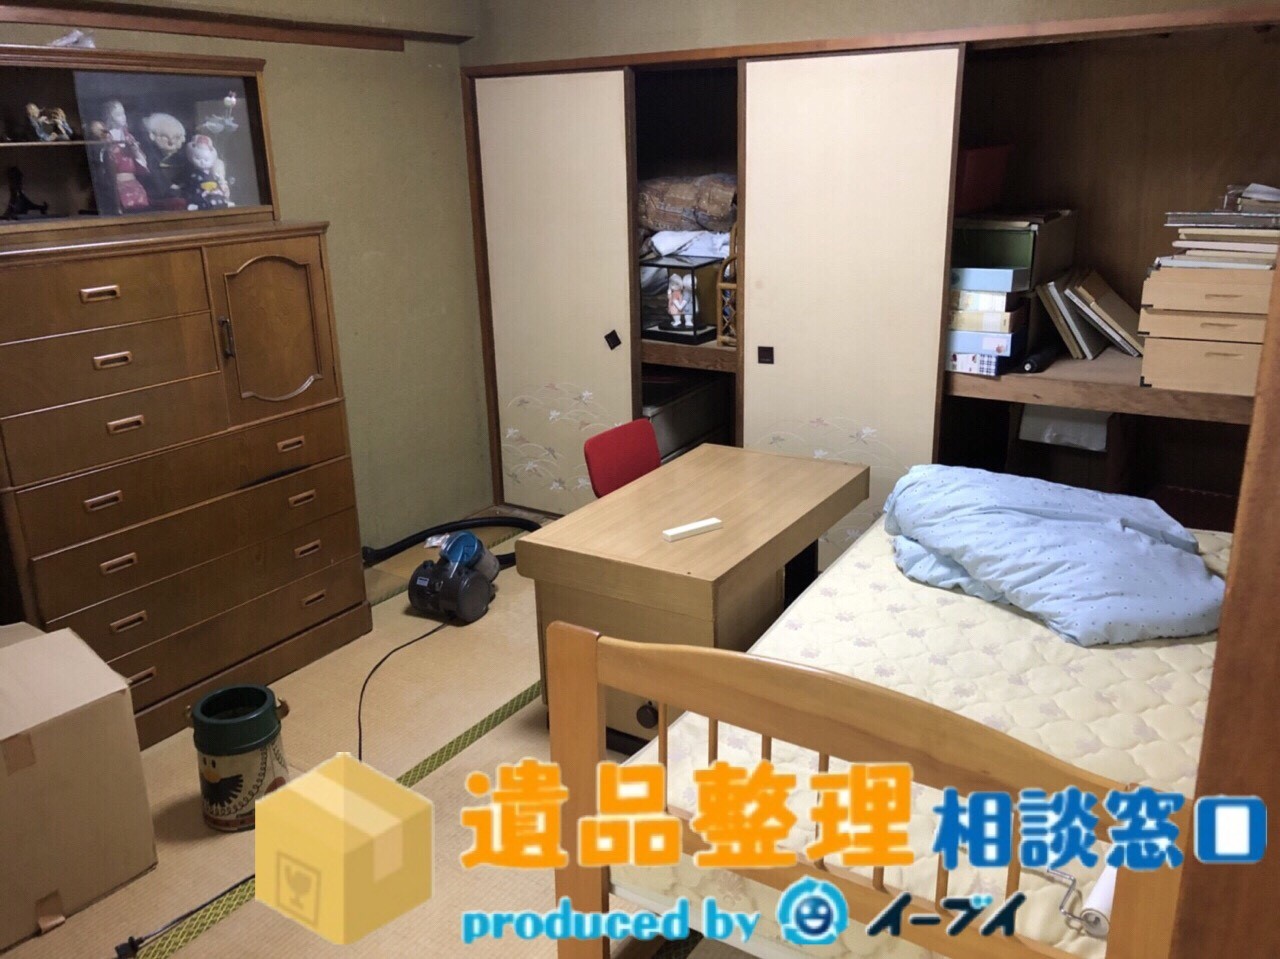 大阪府岸和田市で遺品整理に伴う片付けや家具の処分のご依頼を頂きました。のアイキャッチ